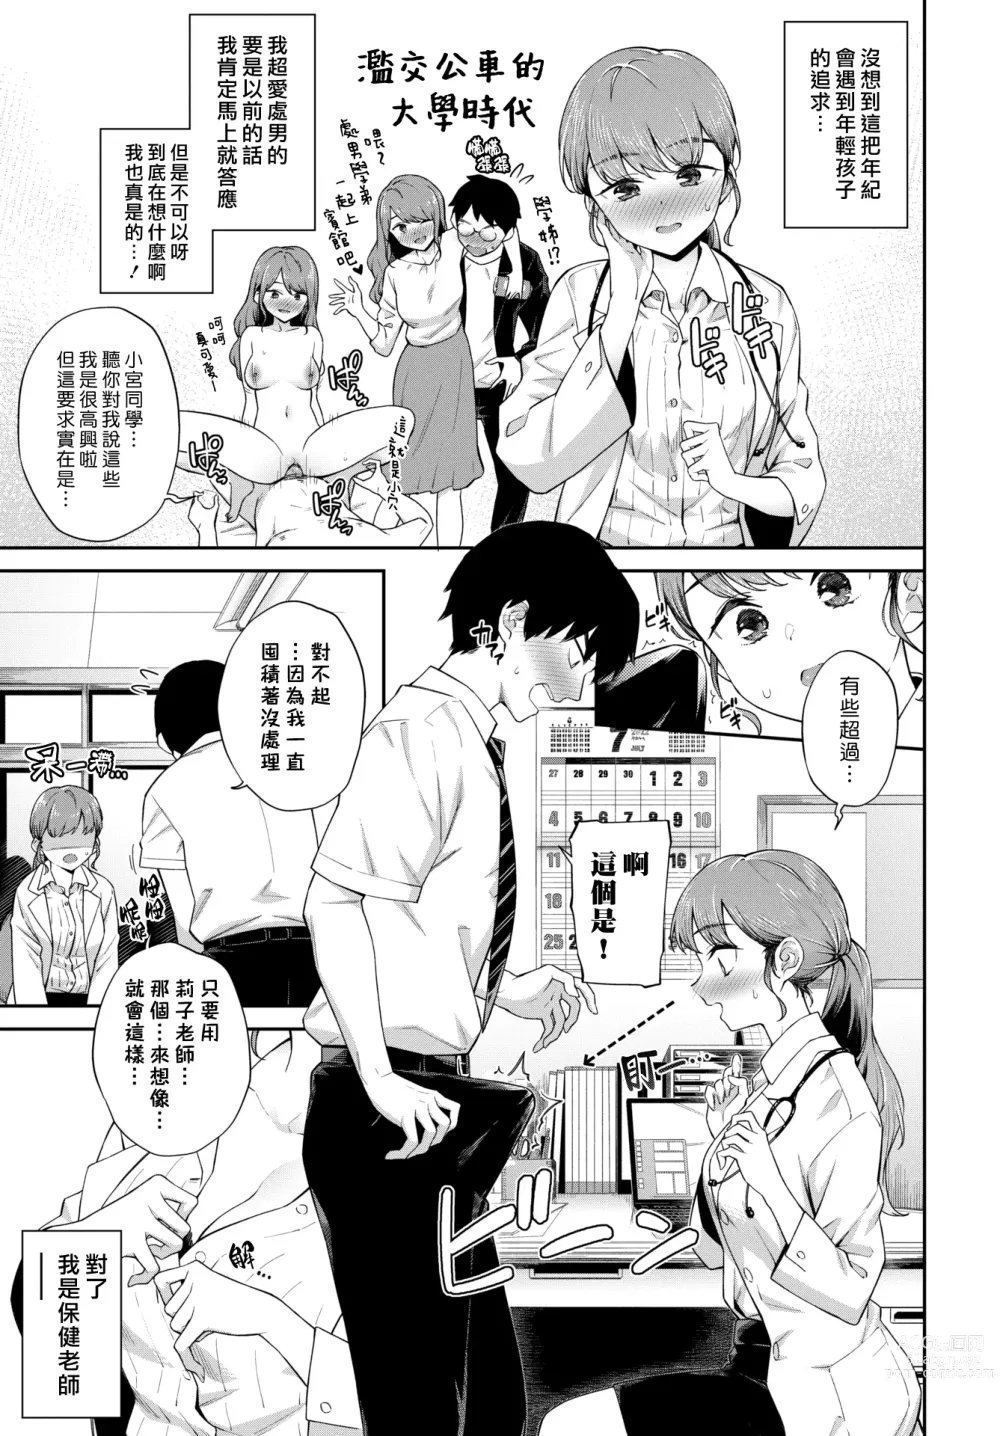 Page 3 of manga 處男諮詢